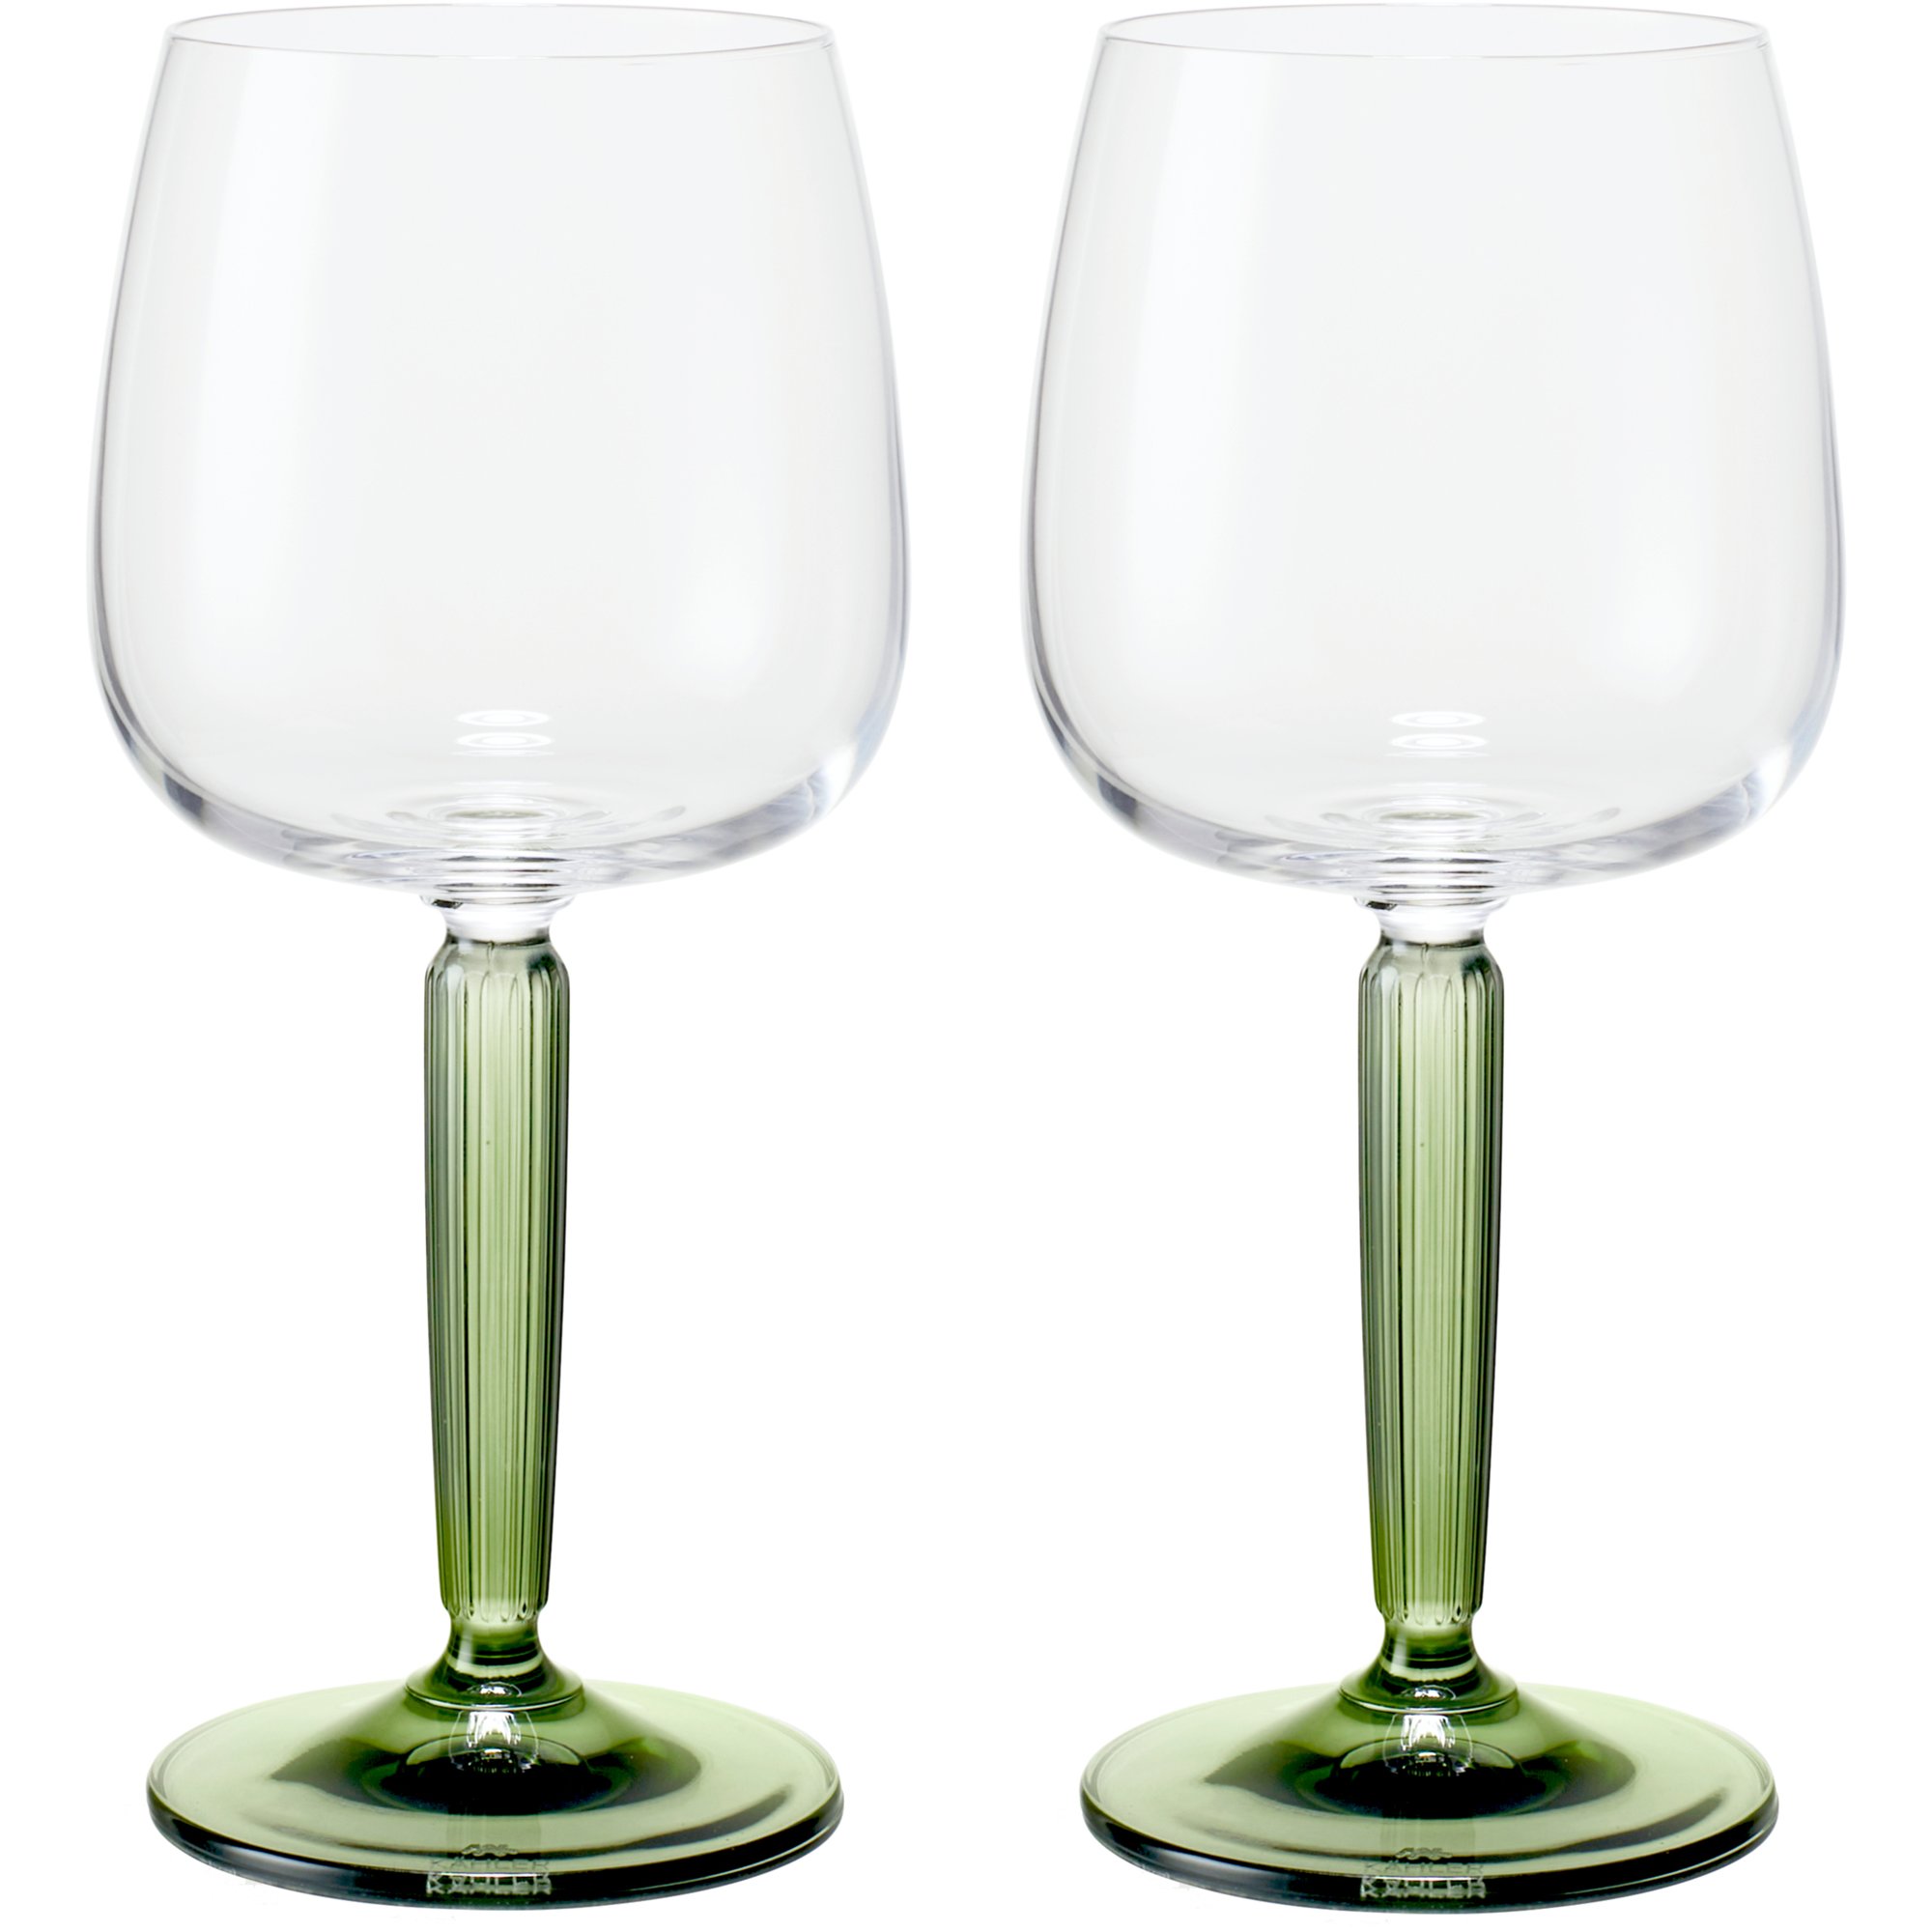 Kähler Hammershøi hvidvinsglas, 35 cl, Ø 8,5 cm, 2 stk, grøn